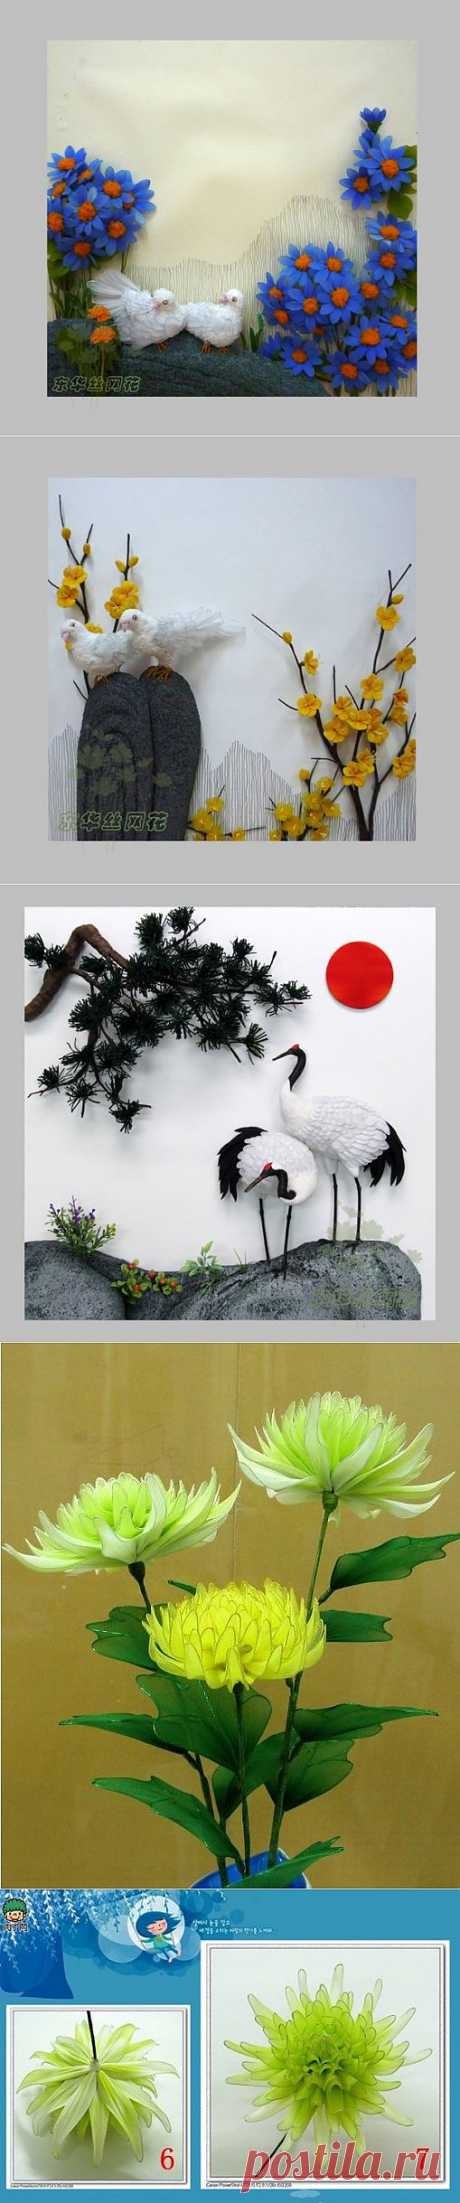 (+1) тема - Хризантема из капроновых чулочных изделий от китайской рукодельницы Ву Чуан-до | СВОИМИ РУКАМИ